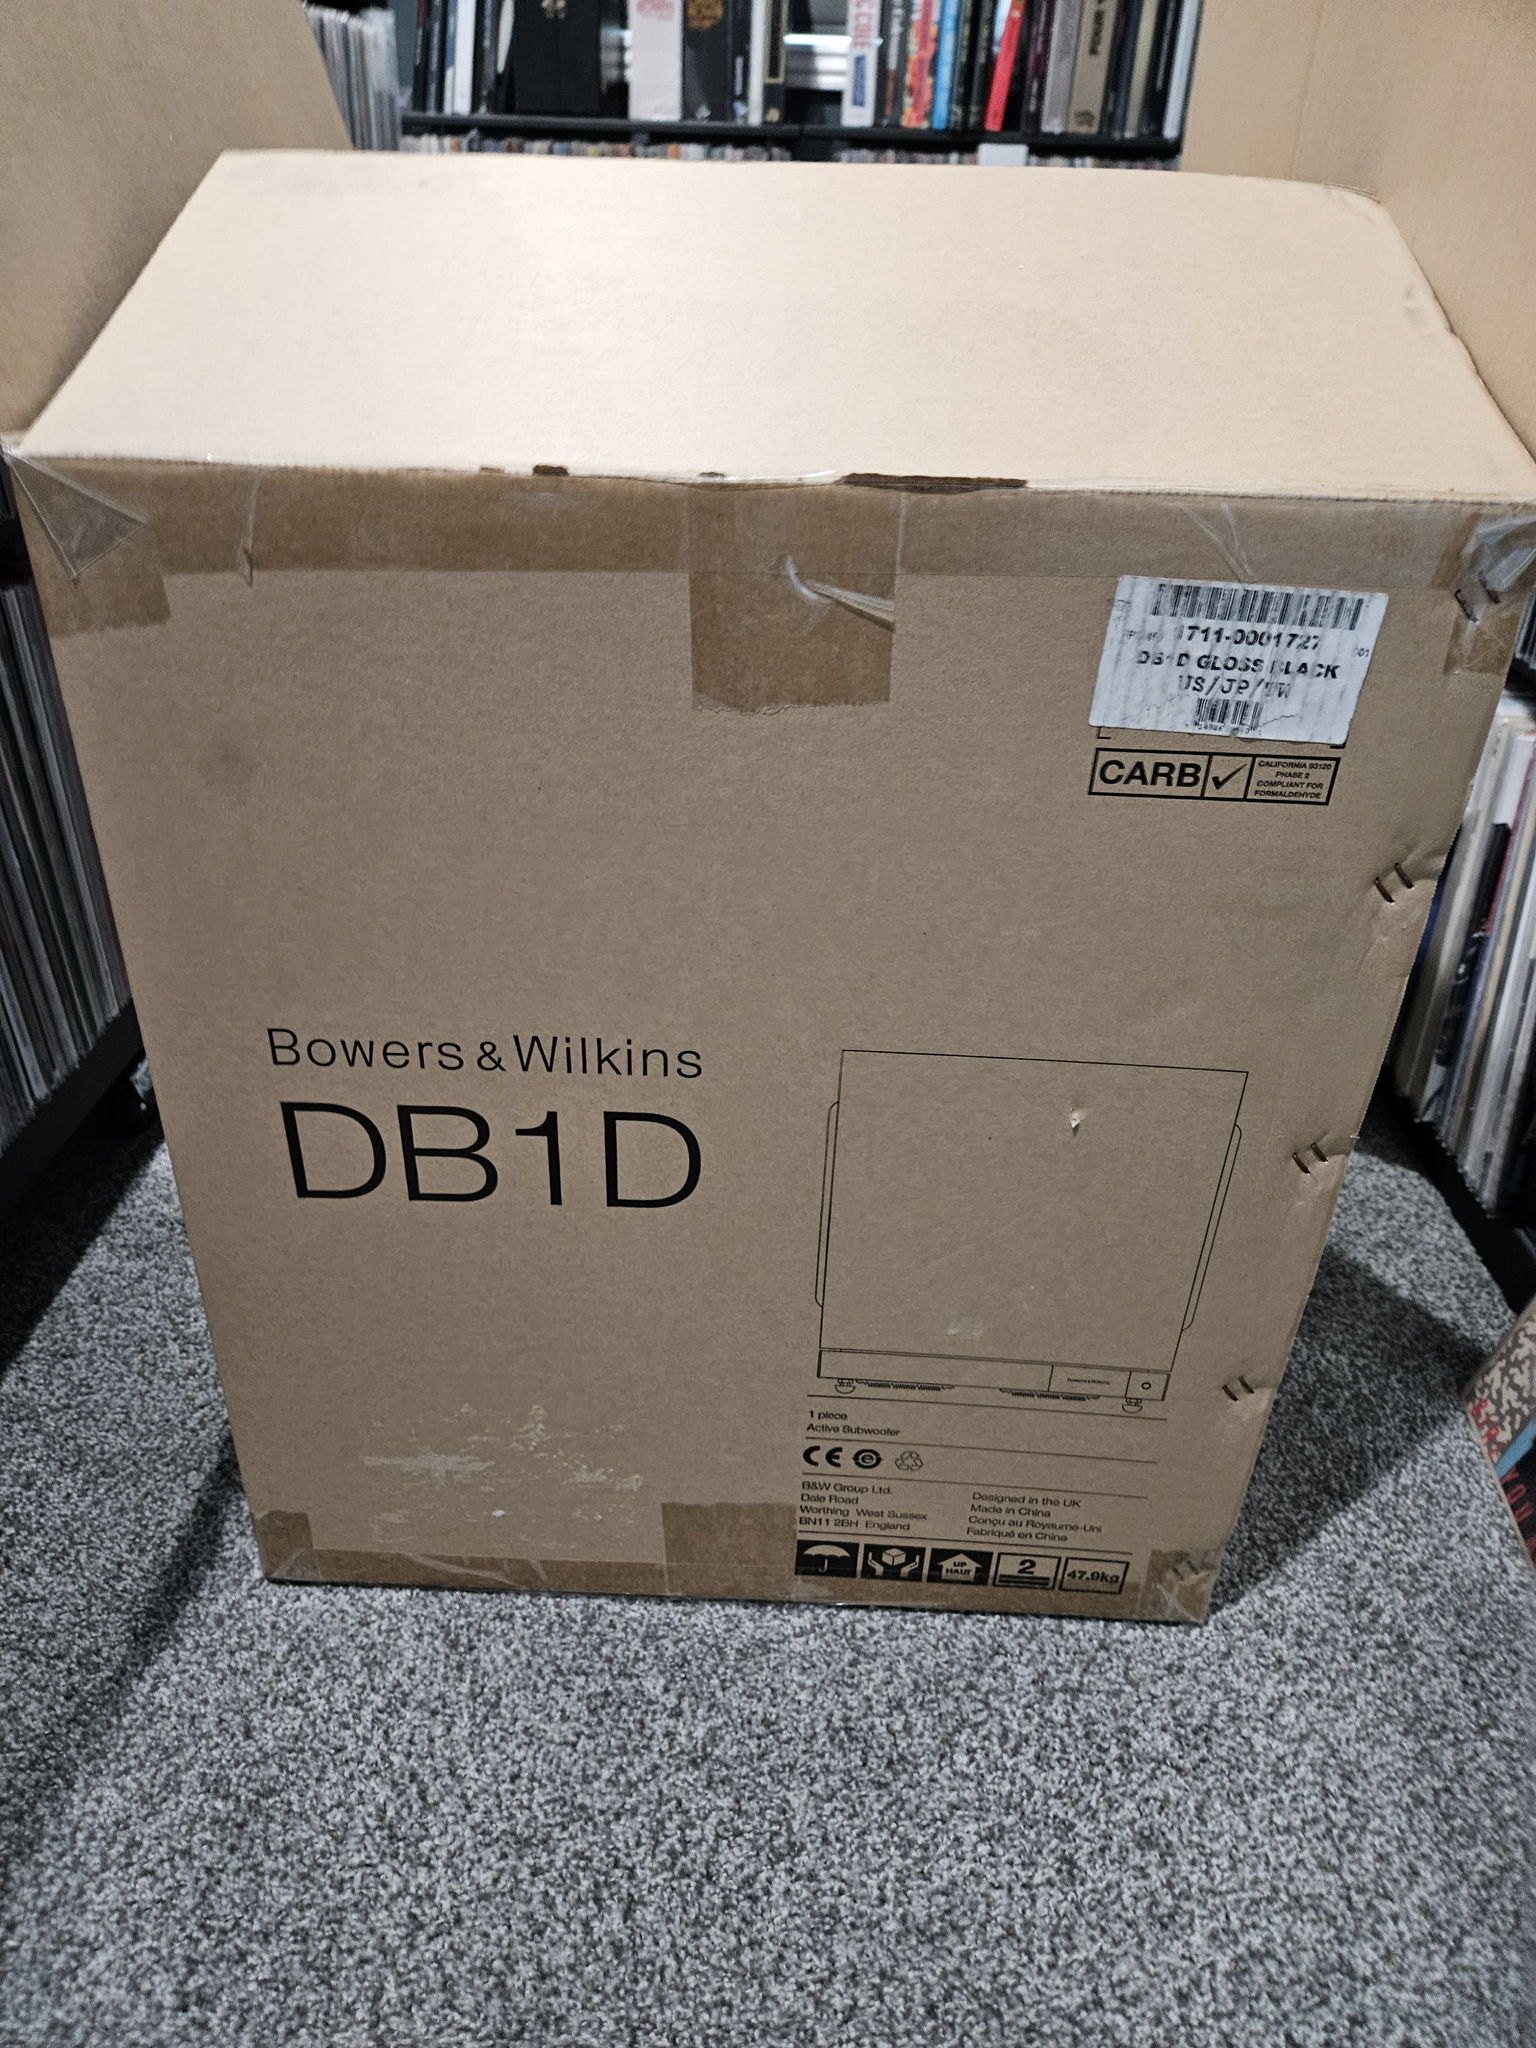 B&W (Bowers & Wilkins) DB1D 9